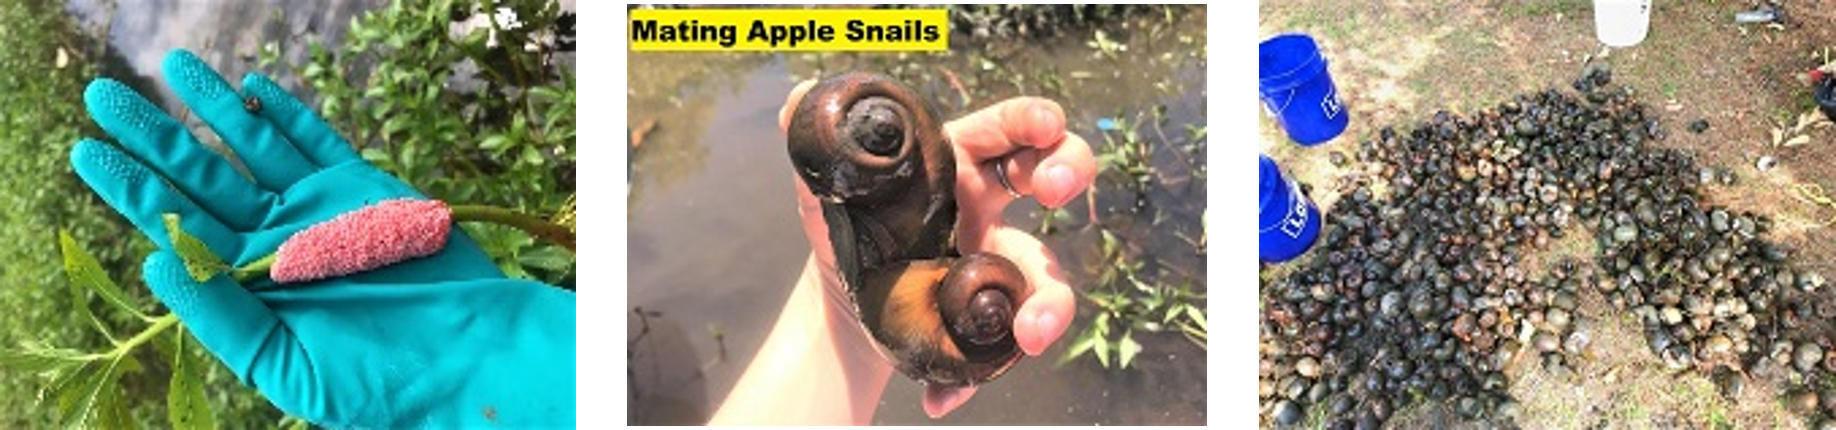 Apple Snails 1